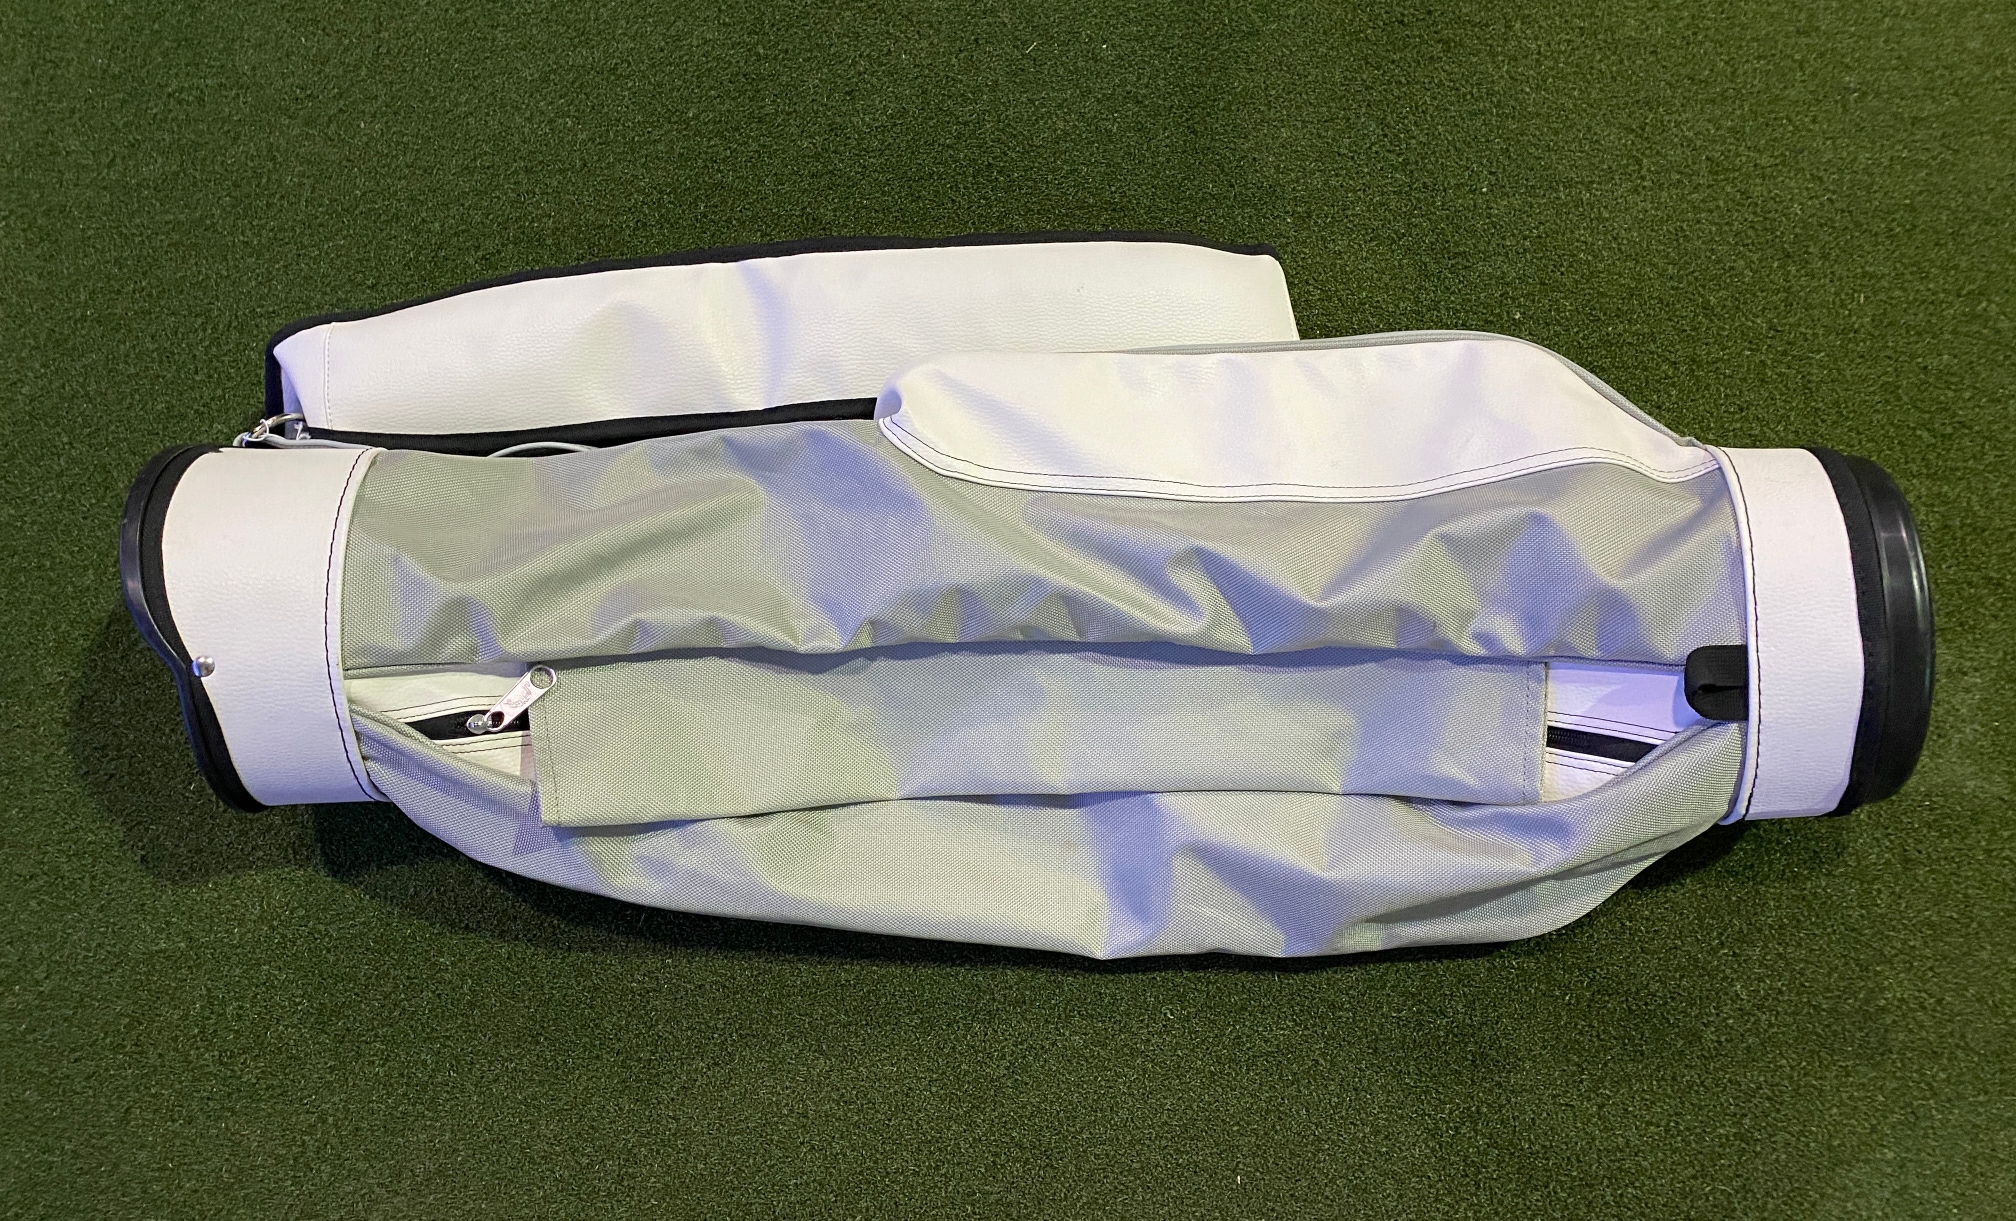 Jones Sports Lancer Carry Sunday Bag White 3-Way Divide Single Strap Golf Bag